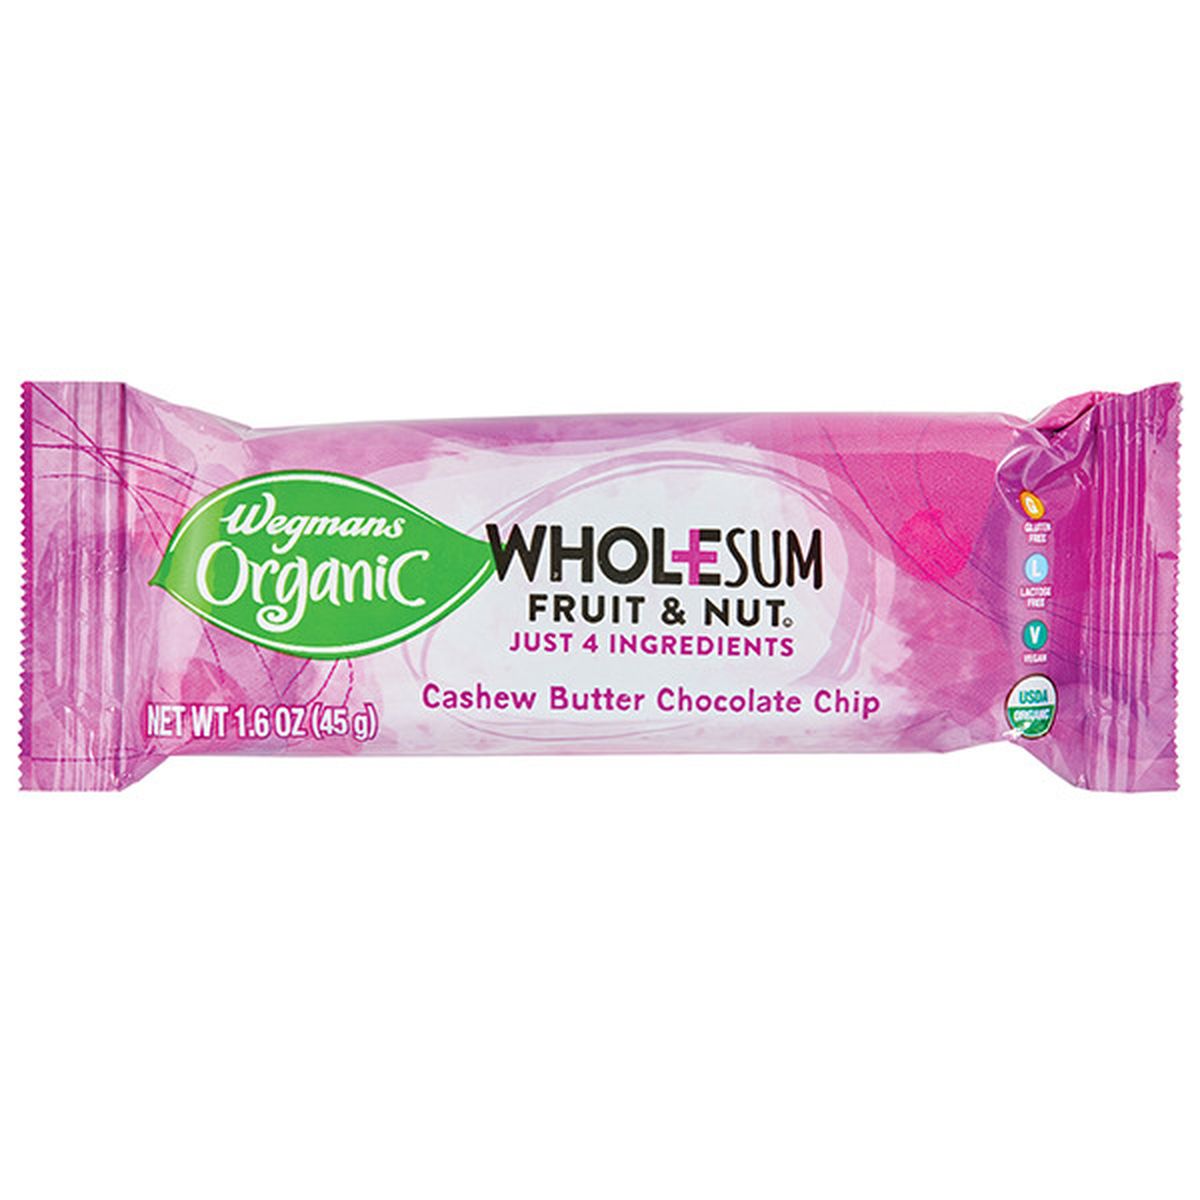 Calories in Wegmans Organic Cashew Butter Chocolate Chip Wholesum Fruit & Nut Bar